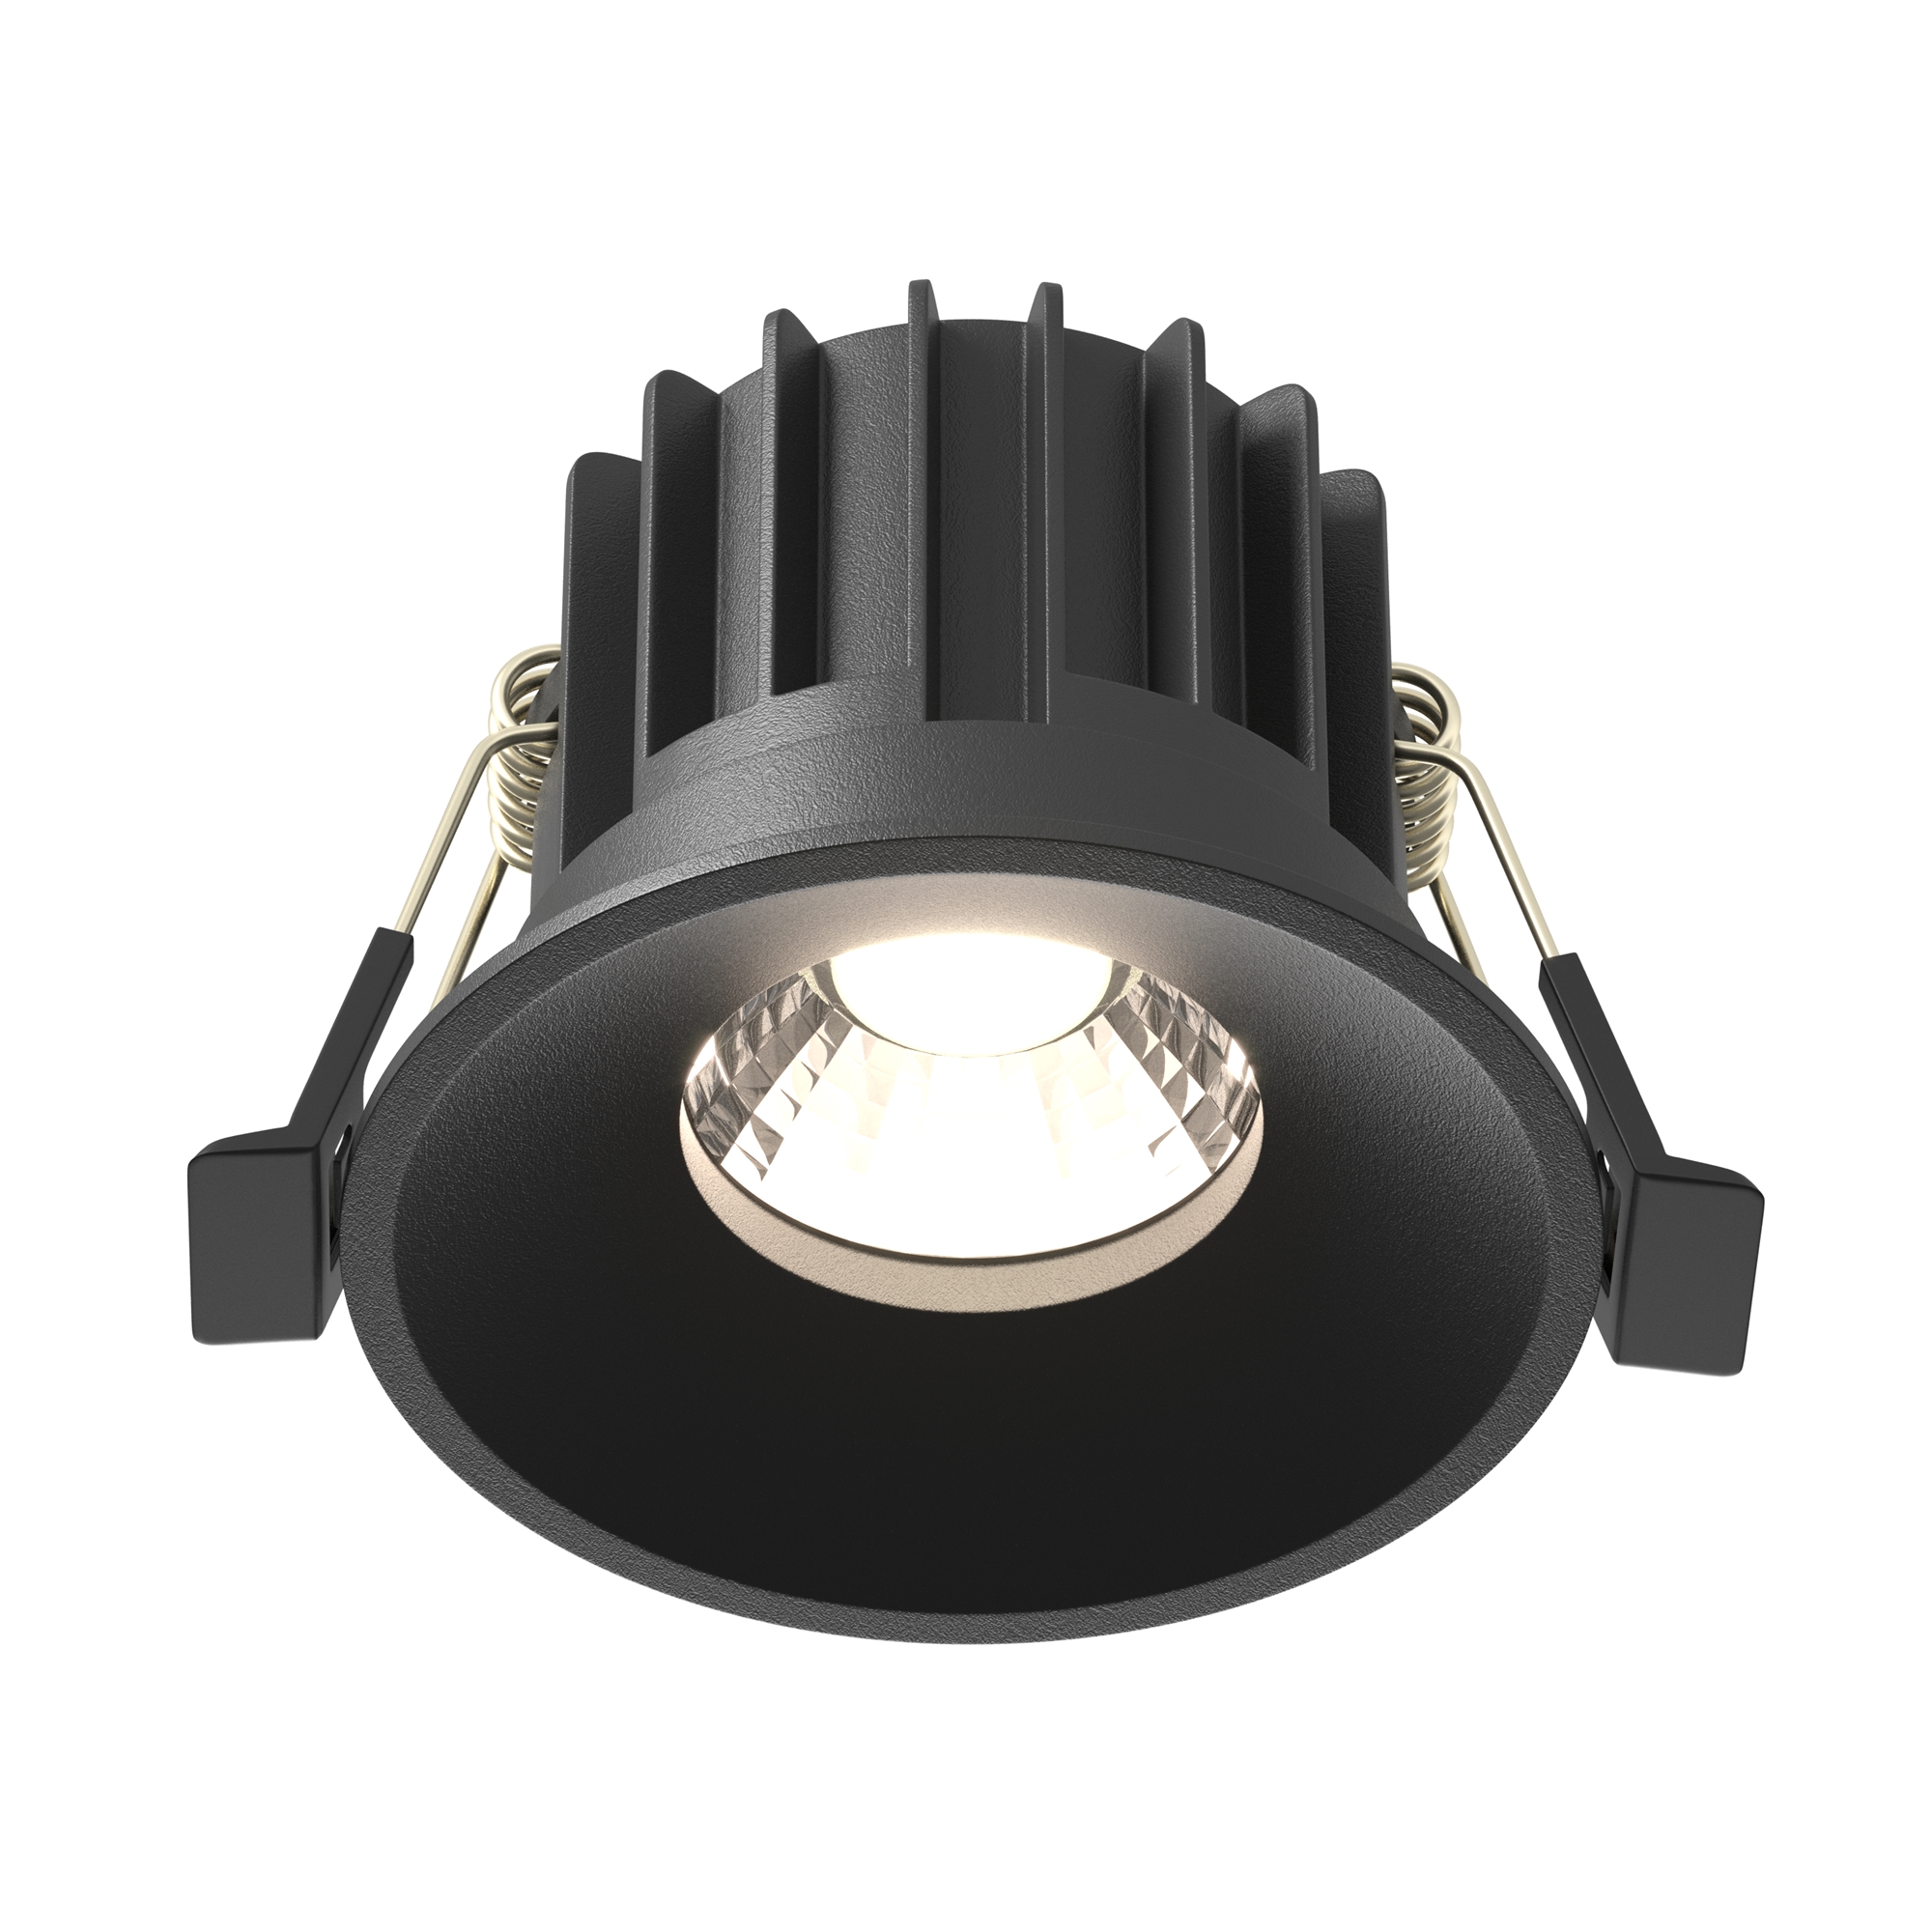 Встраиваемый светильник Round 2200-4000K 12W 60°, DL058-12W-DTW-B фен mark shmidt compact 9610 2200 вт